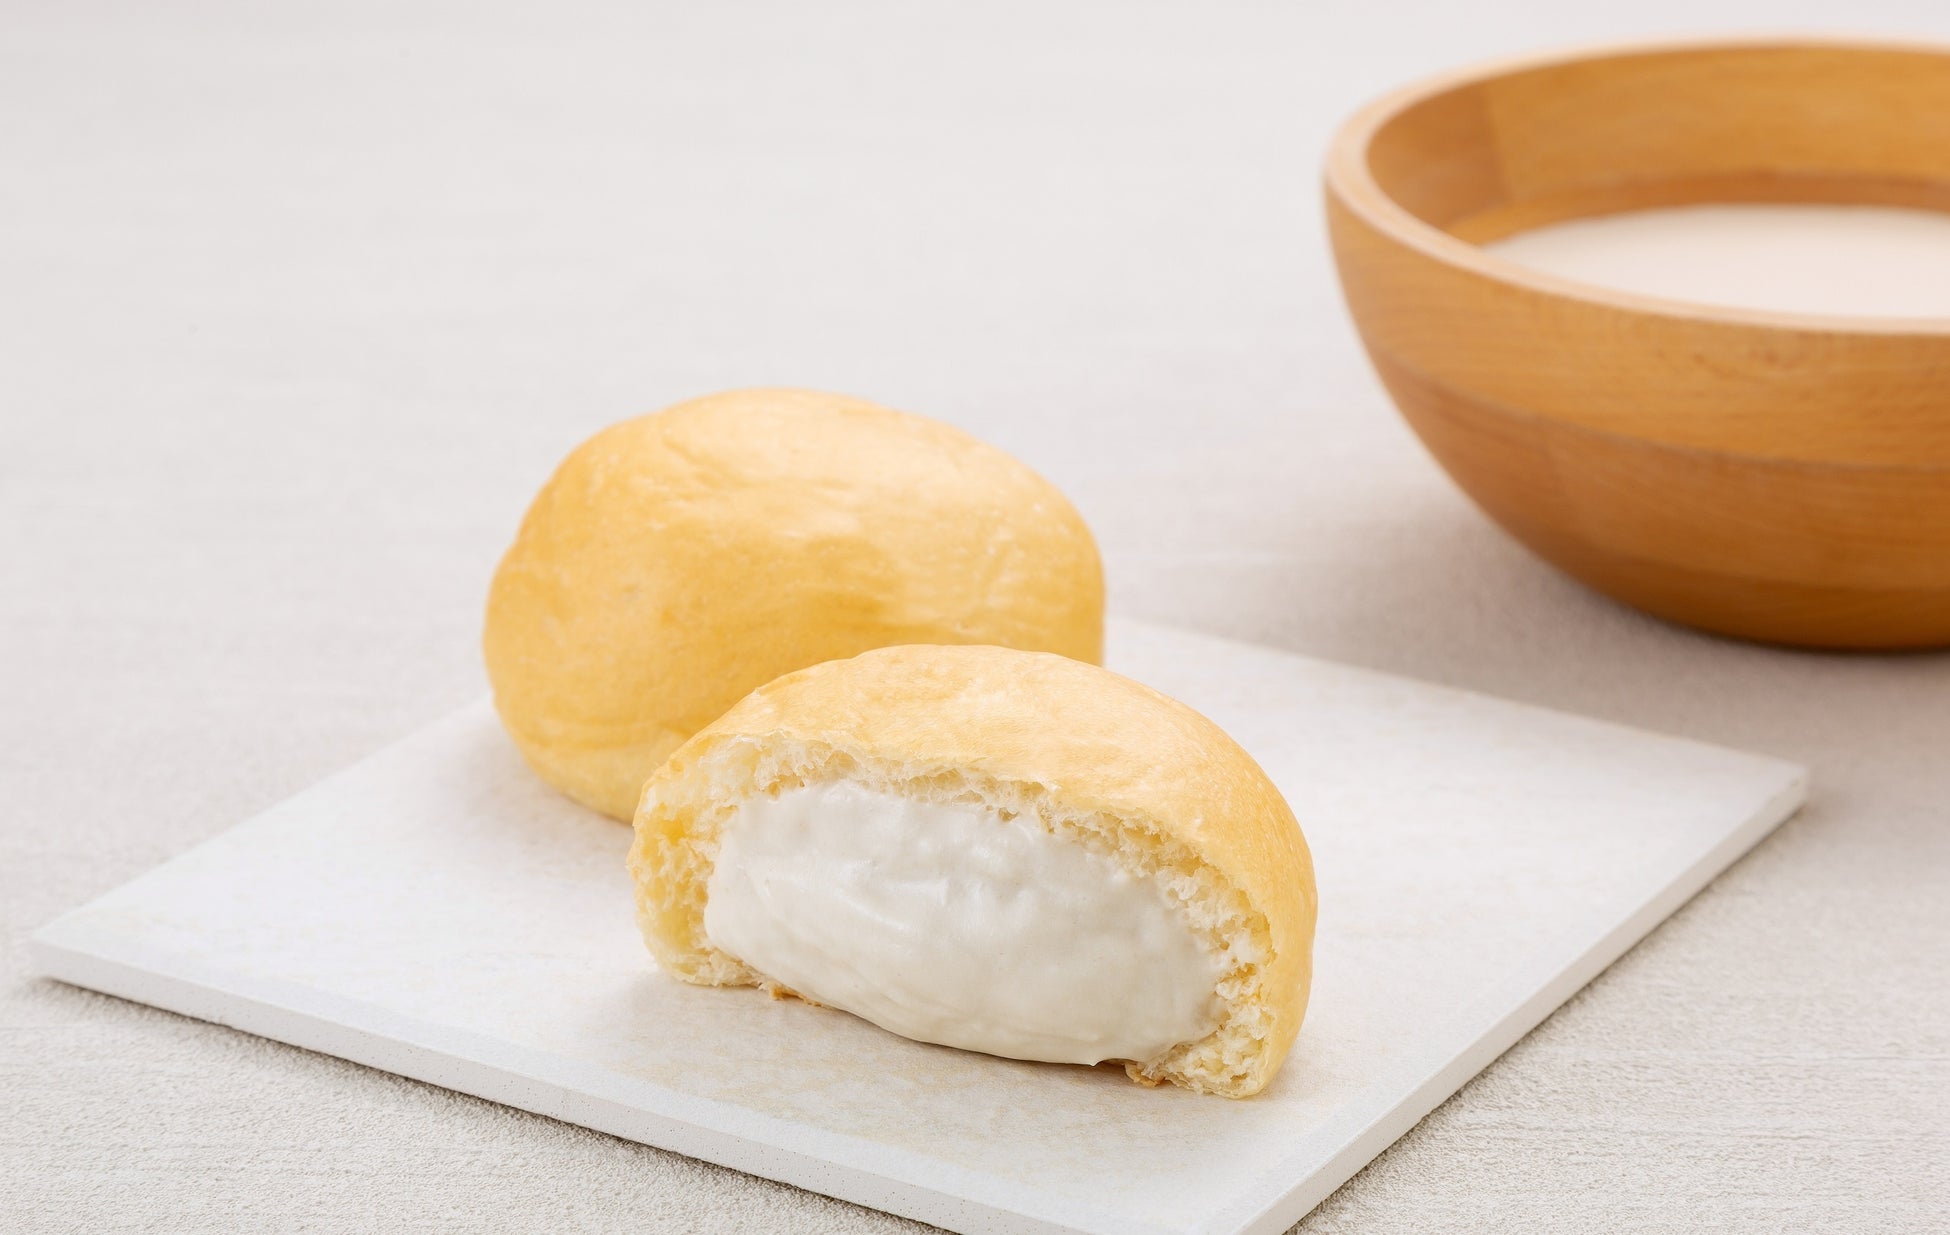 【八天堂×TULLY’S COFFEEコラボレーション】くりーむパン史上初、植物性素材プラントベースの「豆乳くりーむパン」を新発売